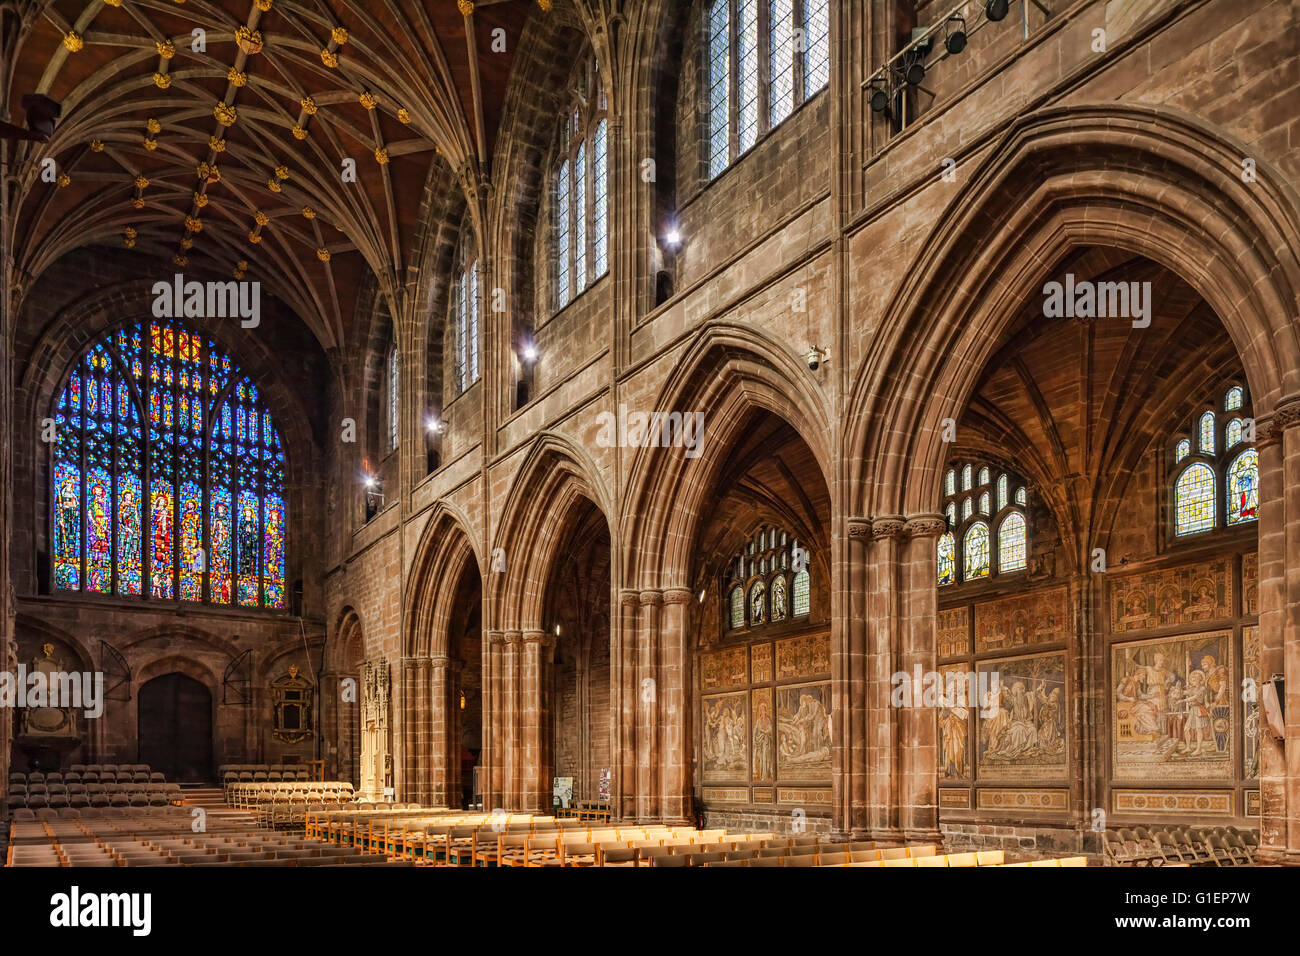 Intérieur de la cathédrale de Chester, en regardant vers la fenêtre de l'Ouest et les mosaïques sur le mur nord de la nef. Banque D'Images